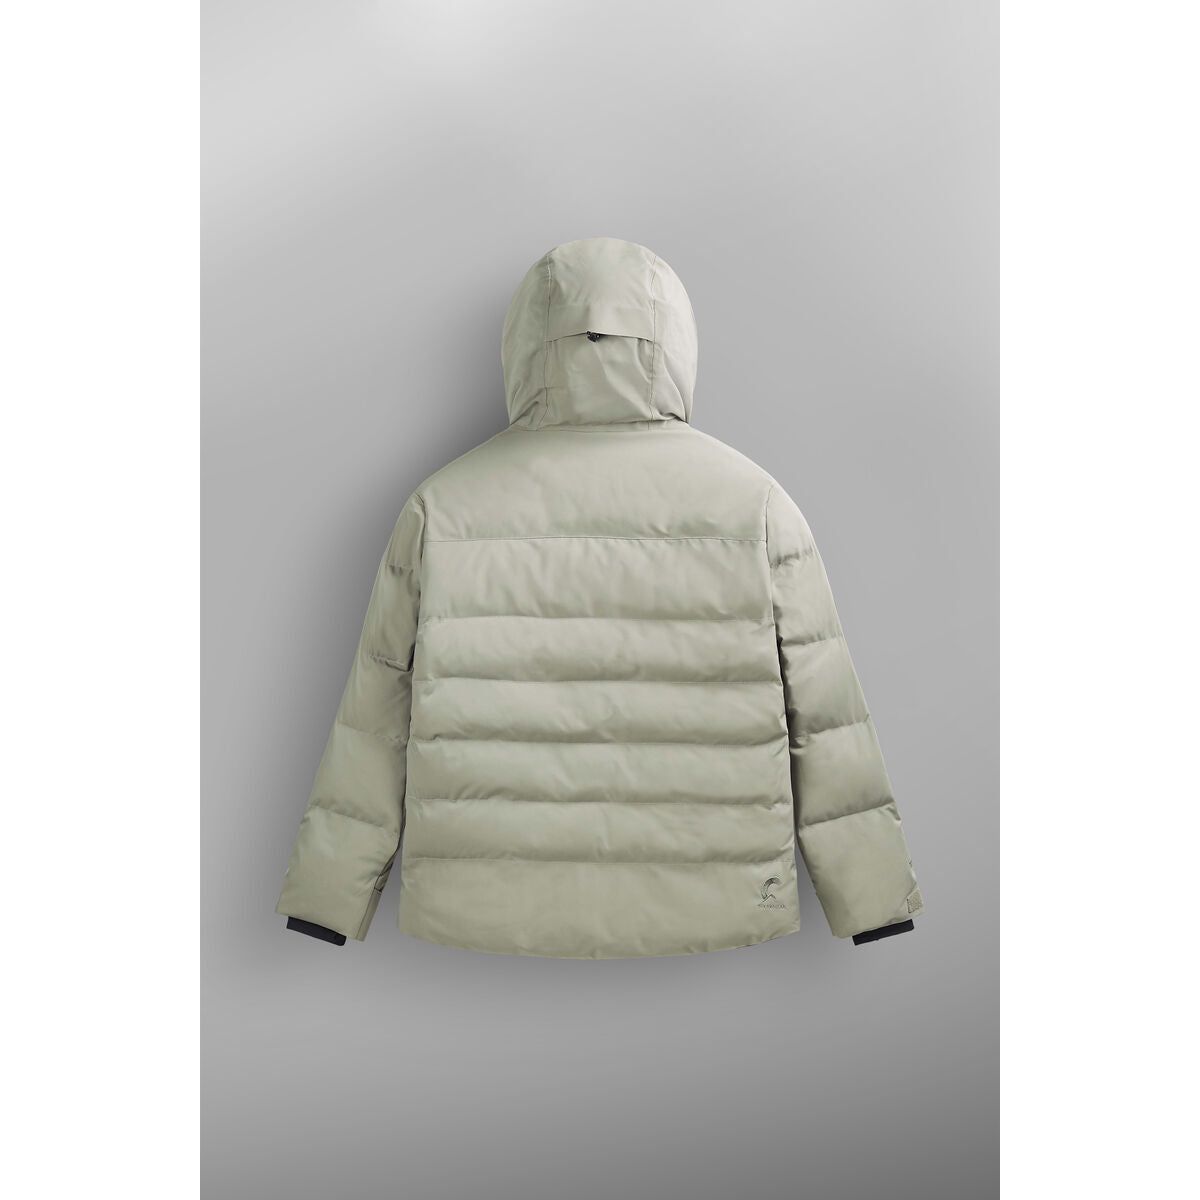 Manteau de Ski Lement pour Femmes||Lement Ski Jacket for Women's